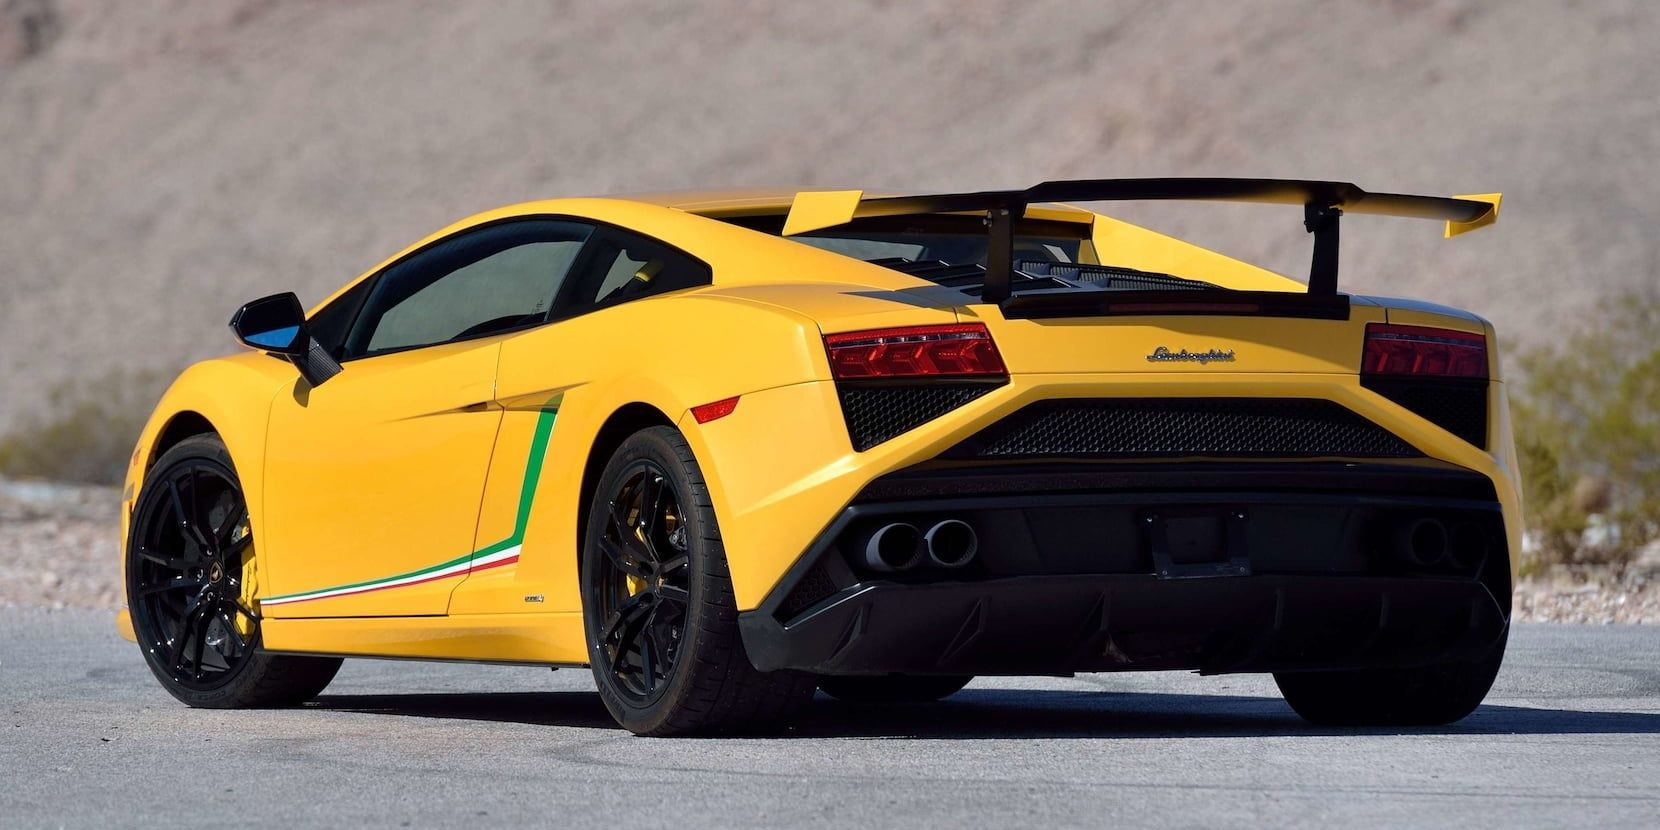 2014 Lamborghini Gallardo LP570-4 Squadra Corse on the road